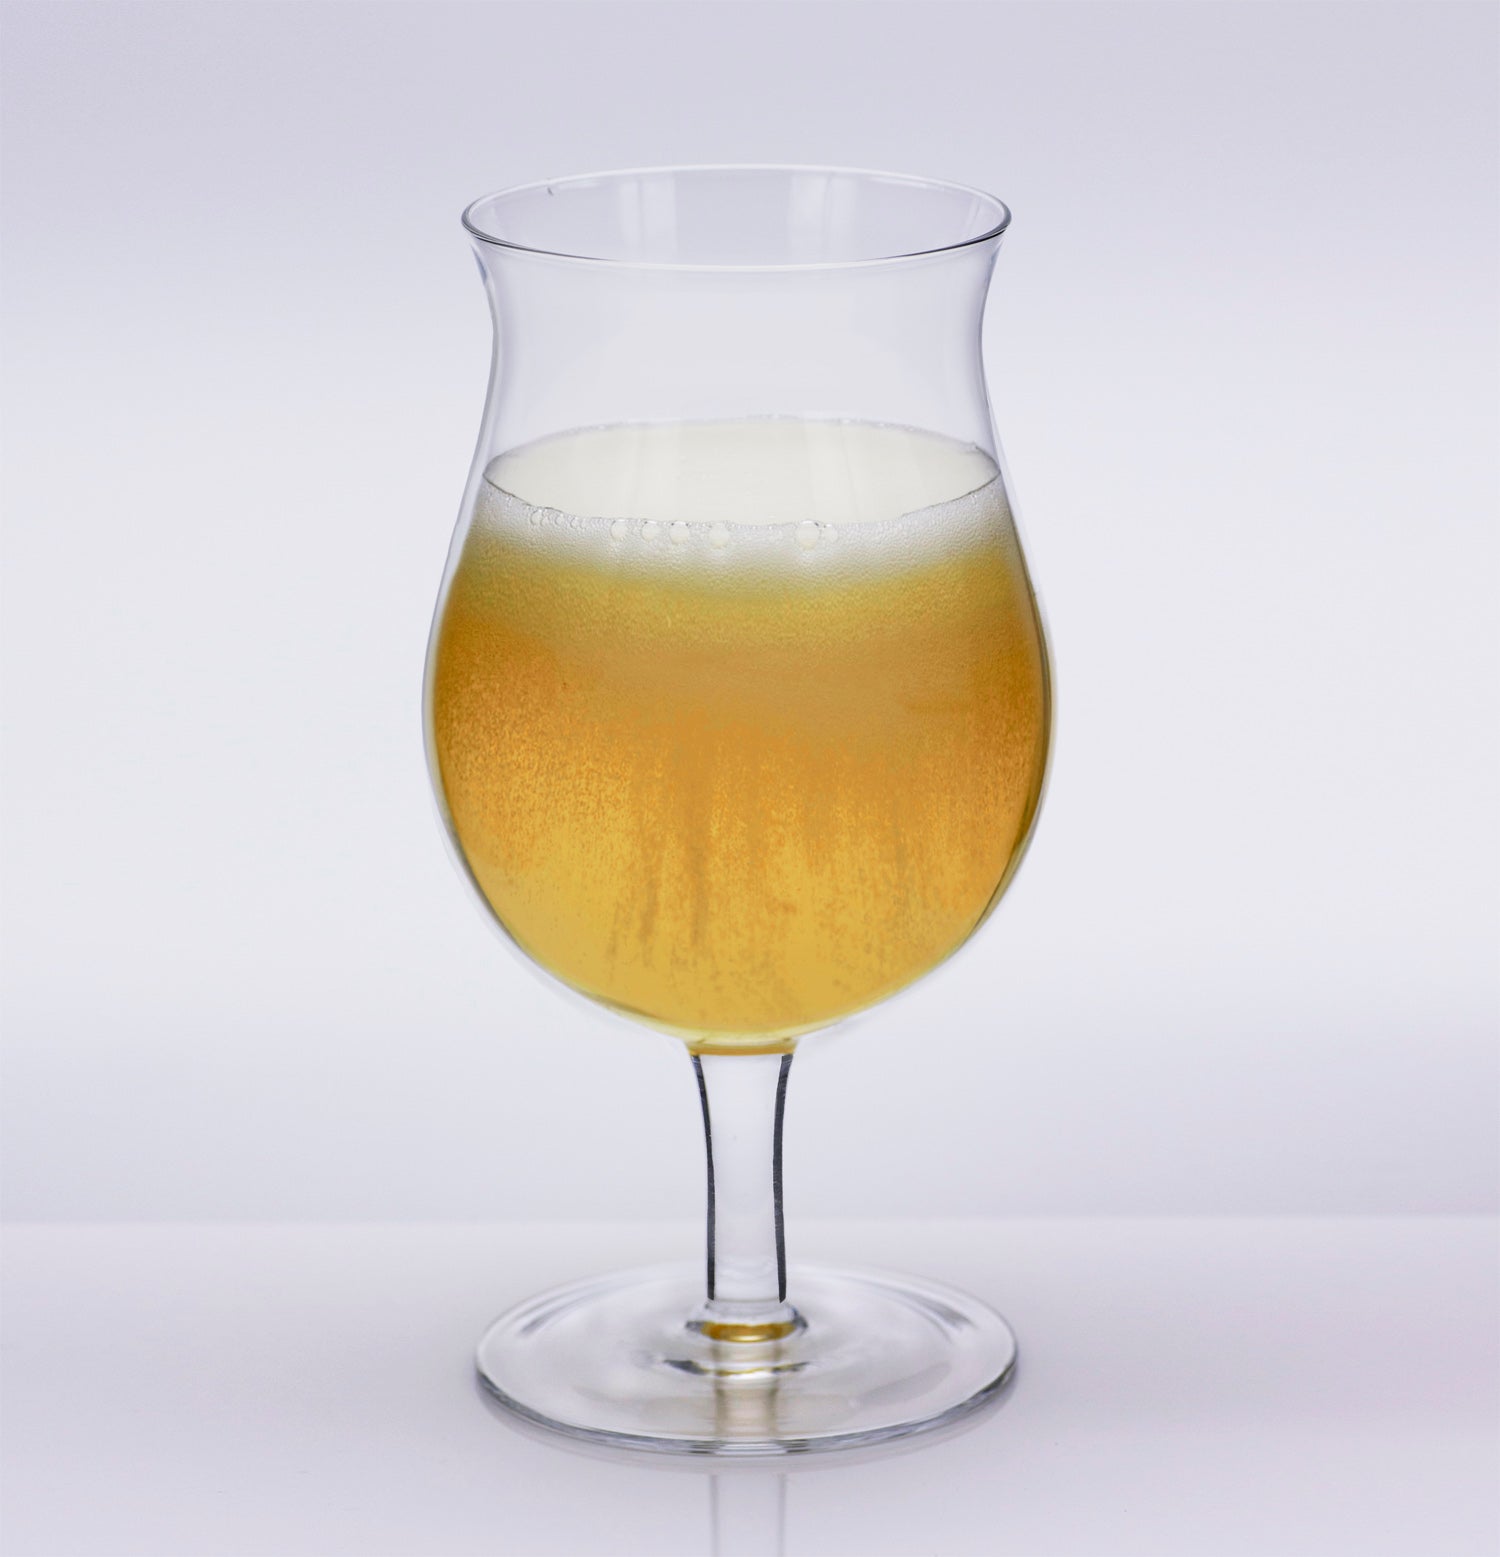 Titanium Belgium Beer Glass (Master Carton of 24)